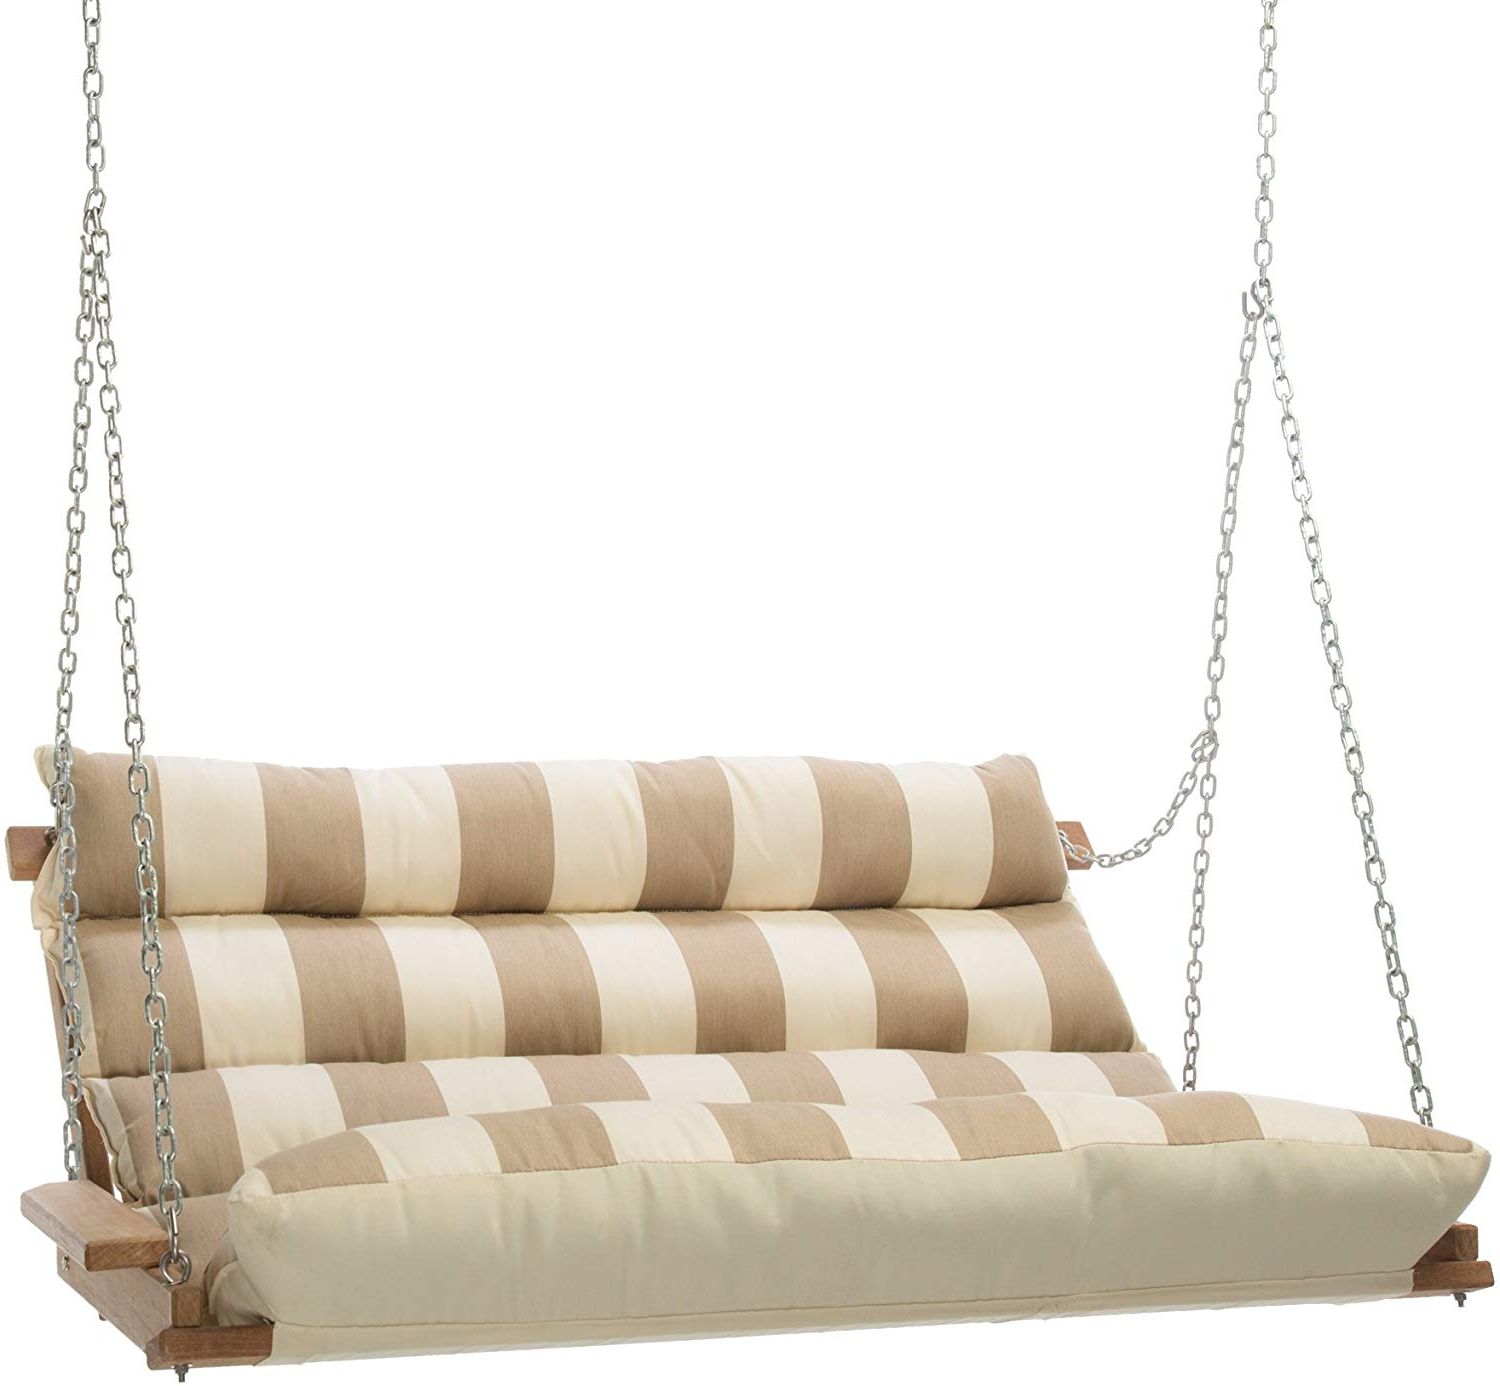 2020 Hatteras Hammocks Sunbrella Deluxe Cushion Swing – Regency Sand Within Deluxe Cushion Sunbrella Porch Swings (View 1 of 30)